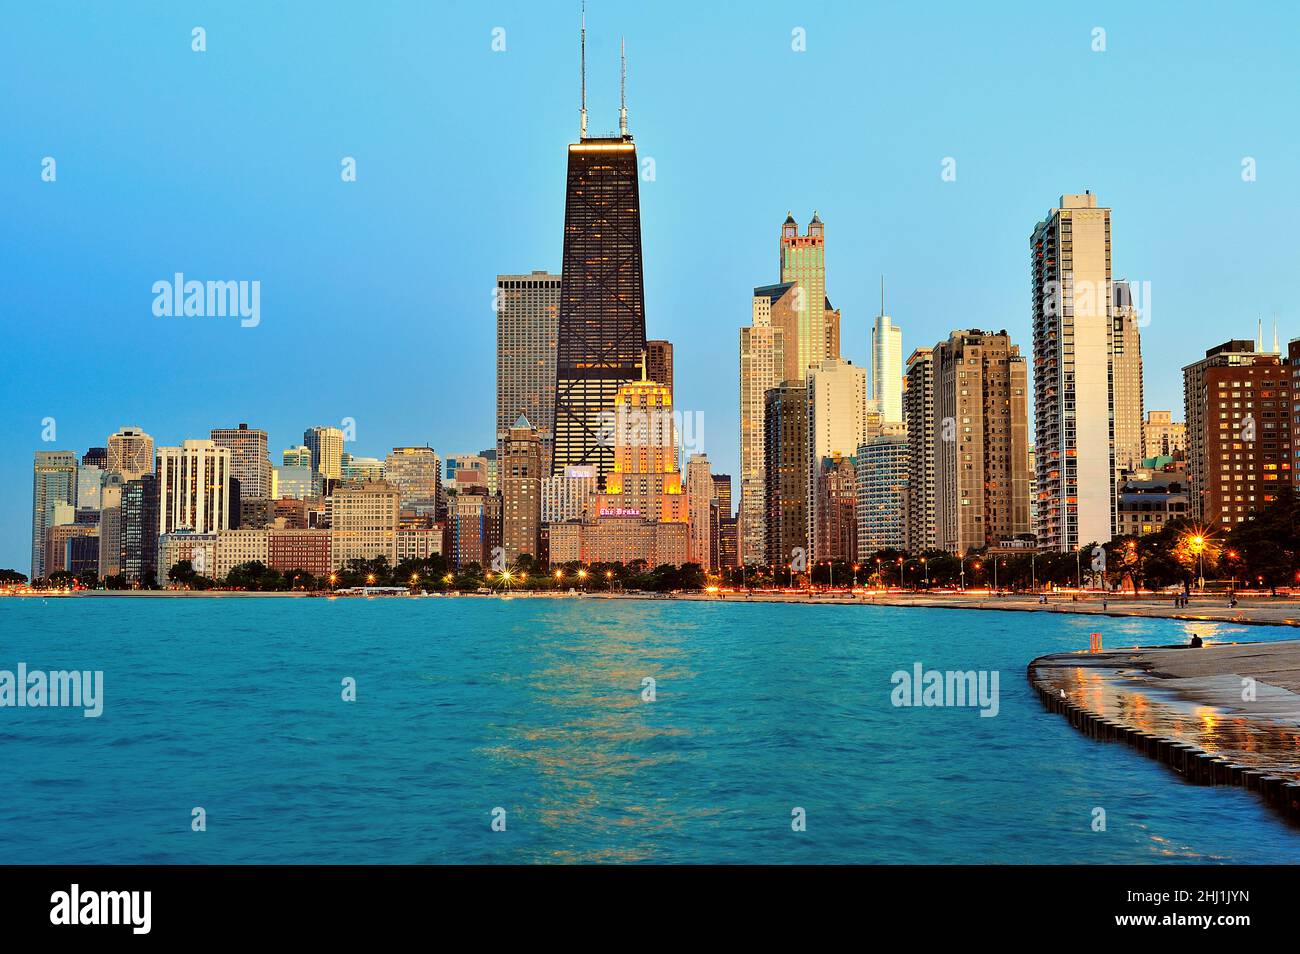 Chicago, Illinois, USA. Gebäude in der Skyline der Stadt, während sich die Nacht auf der Stadt niederlässt, während einige Gebäude das letzte Licht des Tages reflektieren. Stockfoto